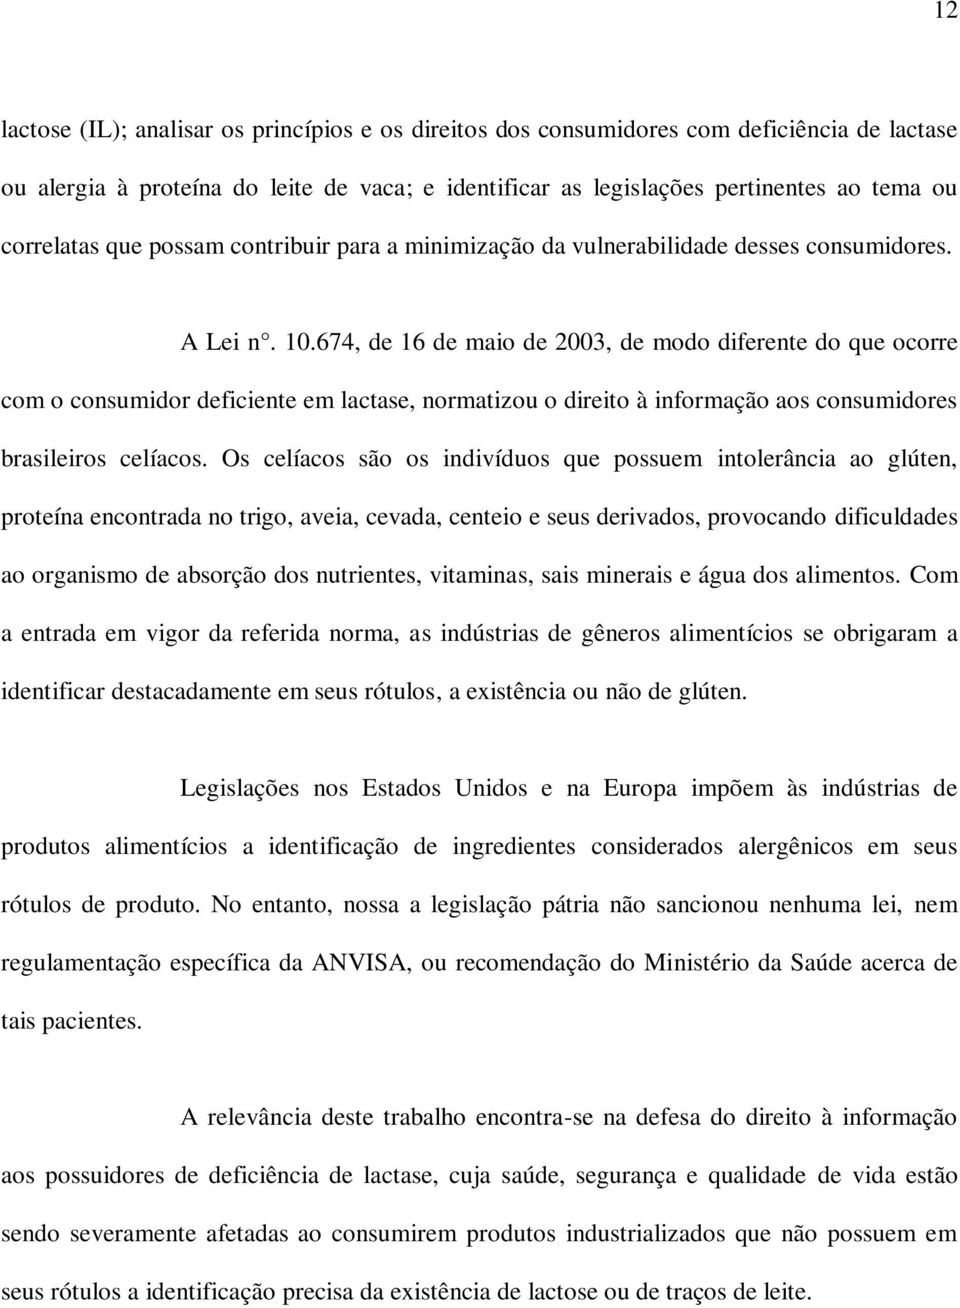 674, de 16 de maio de 2003, de modo diferente do que ocorre com o consumidor deficiente em lactase, normatizou o direito à informação aos consumidores brasileiros celíacos.